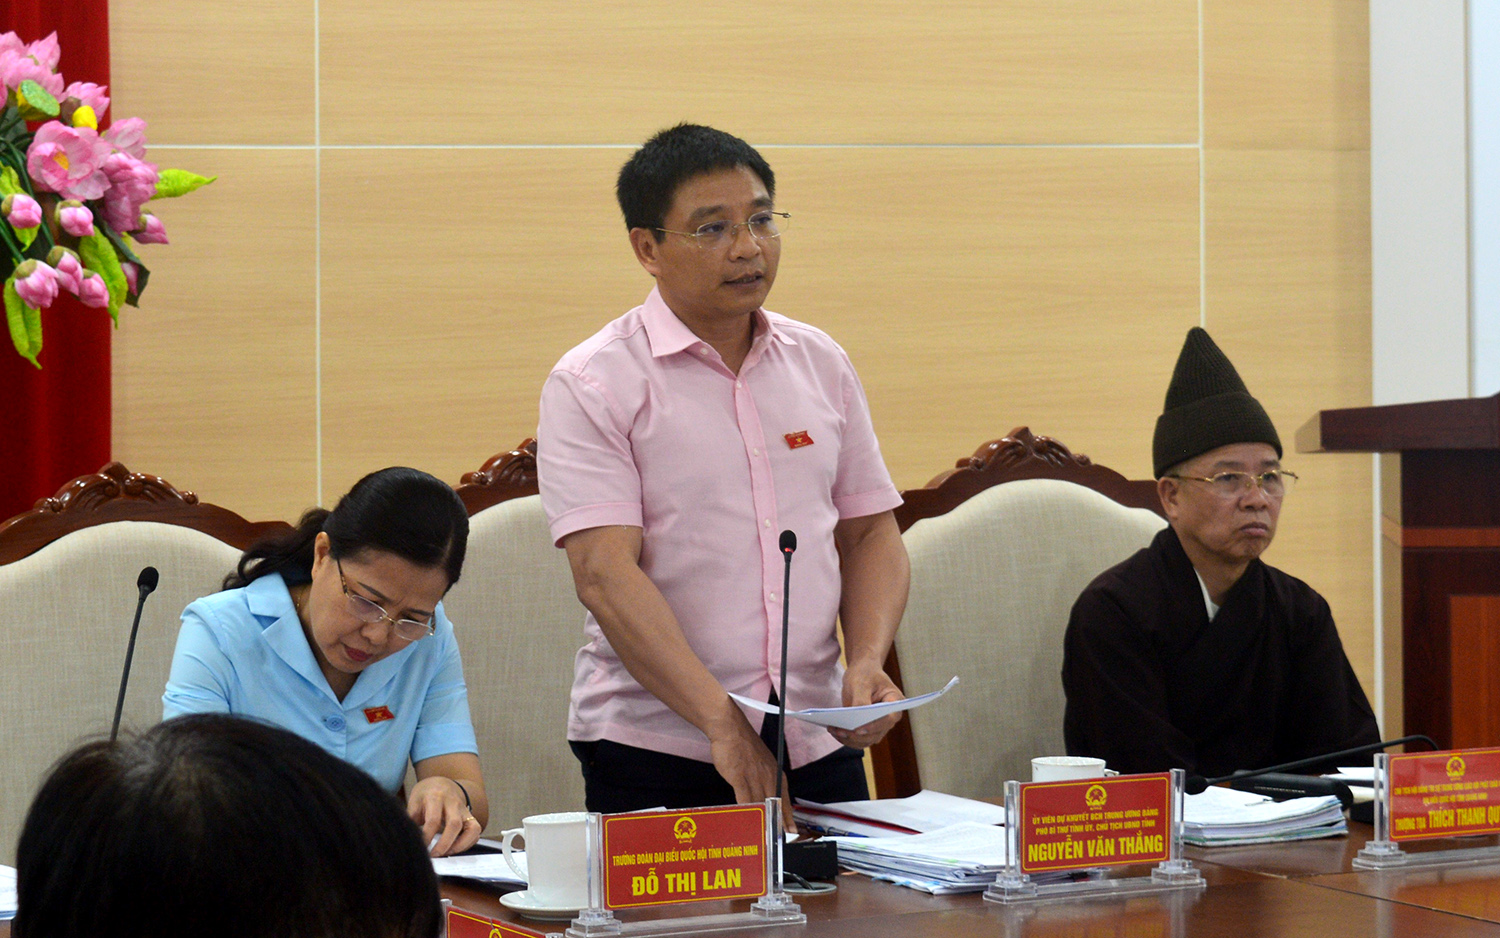 ồng chí Nguyễn Văn Thắng, Phó Bí thư Tỉnh ủy, Chủ tịch UBND tỉnh báo cáo với cử tri về tình hình kinh tế - xã hội 4 tháng đầu năm 2020.